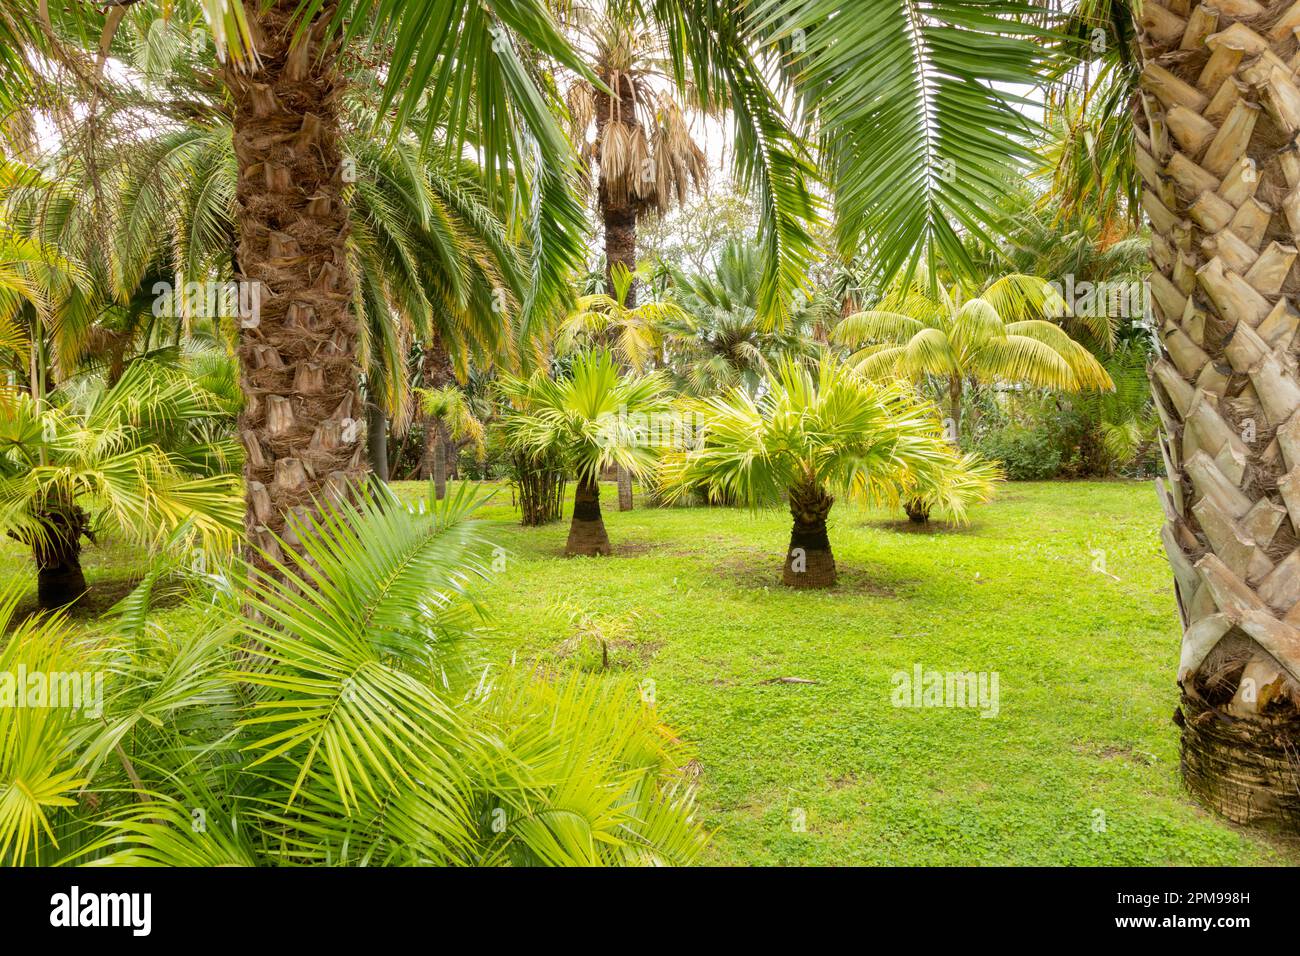 Jardins botaniques de Madère avec palmiers Banque D'Images